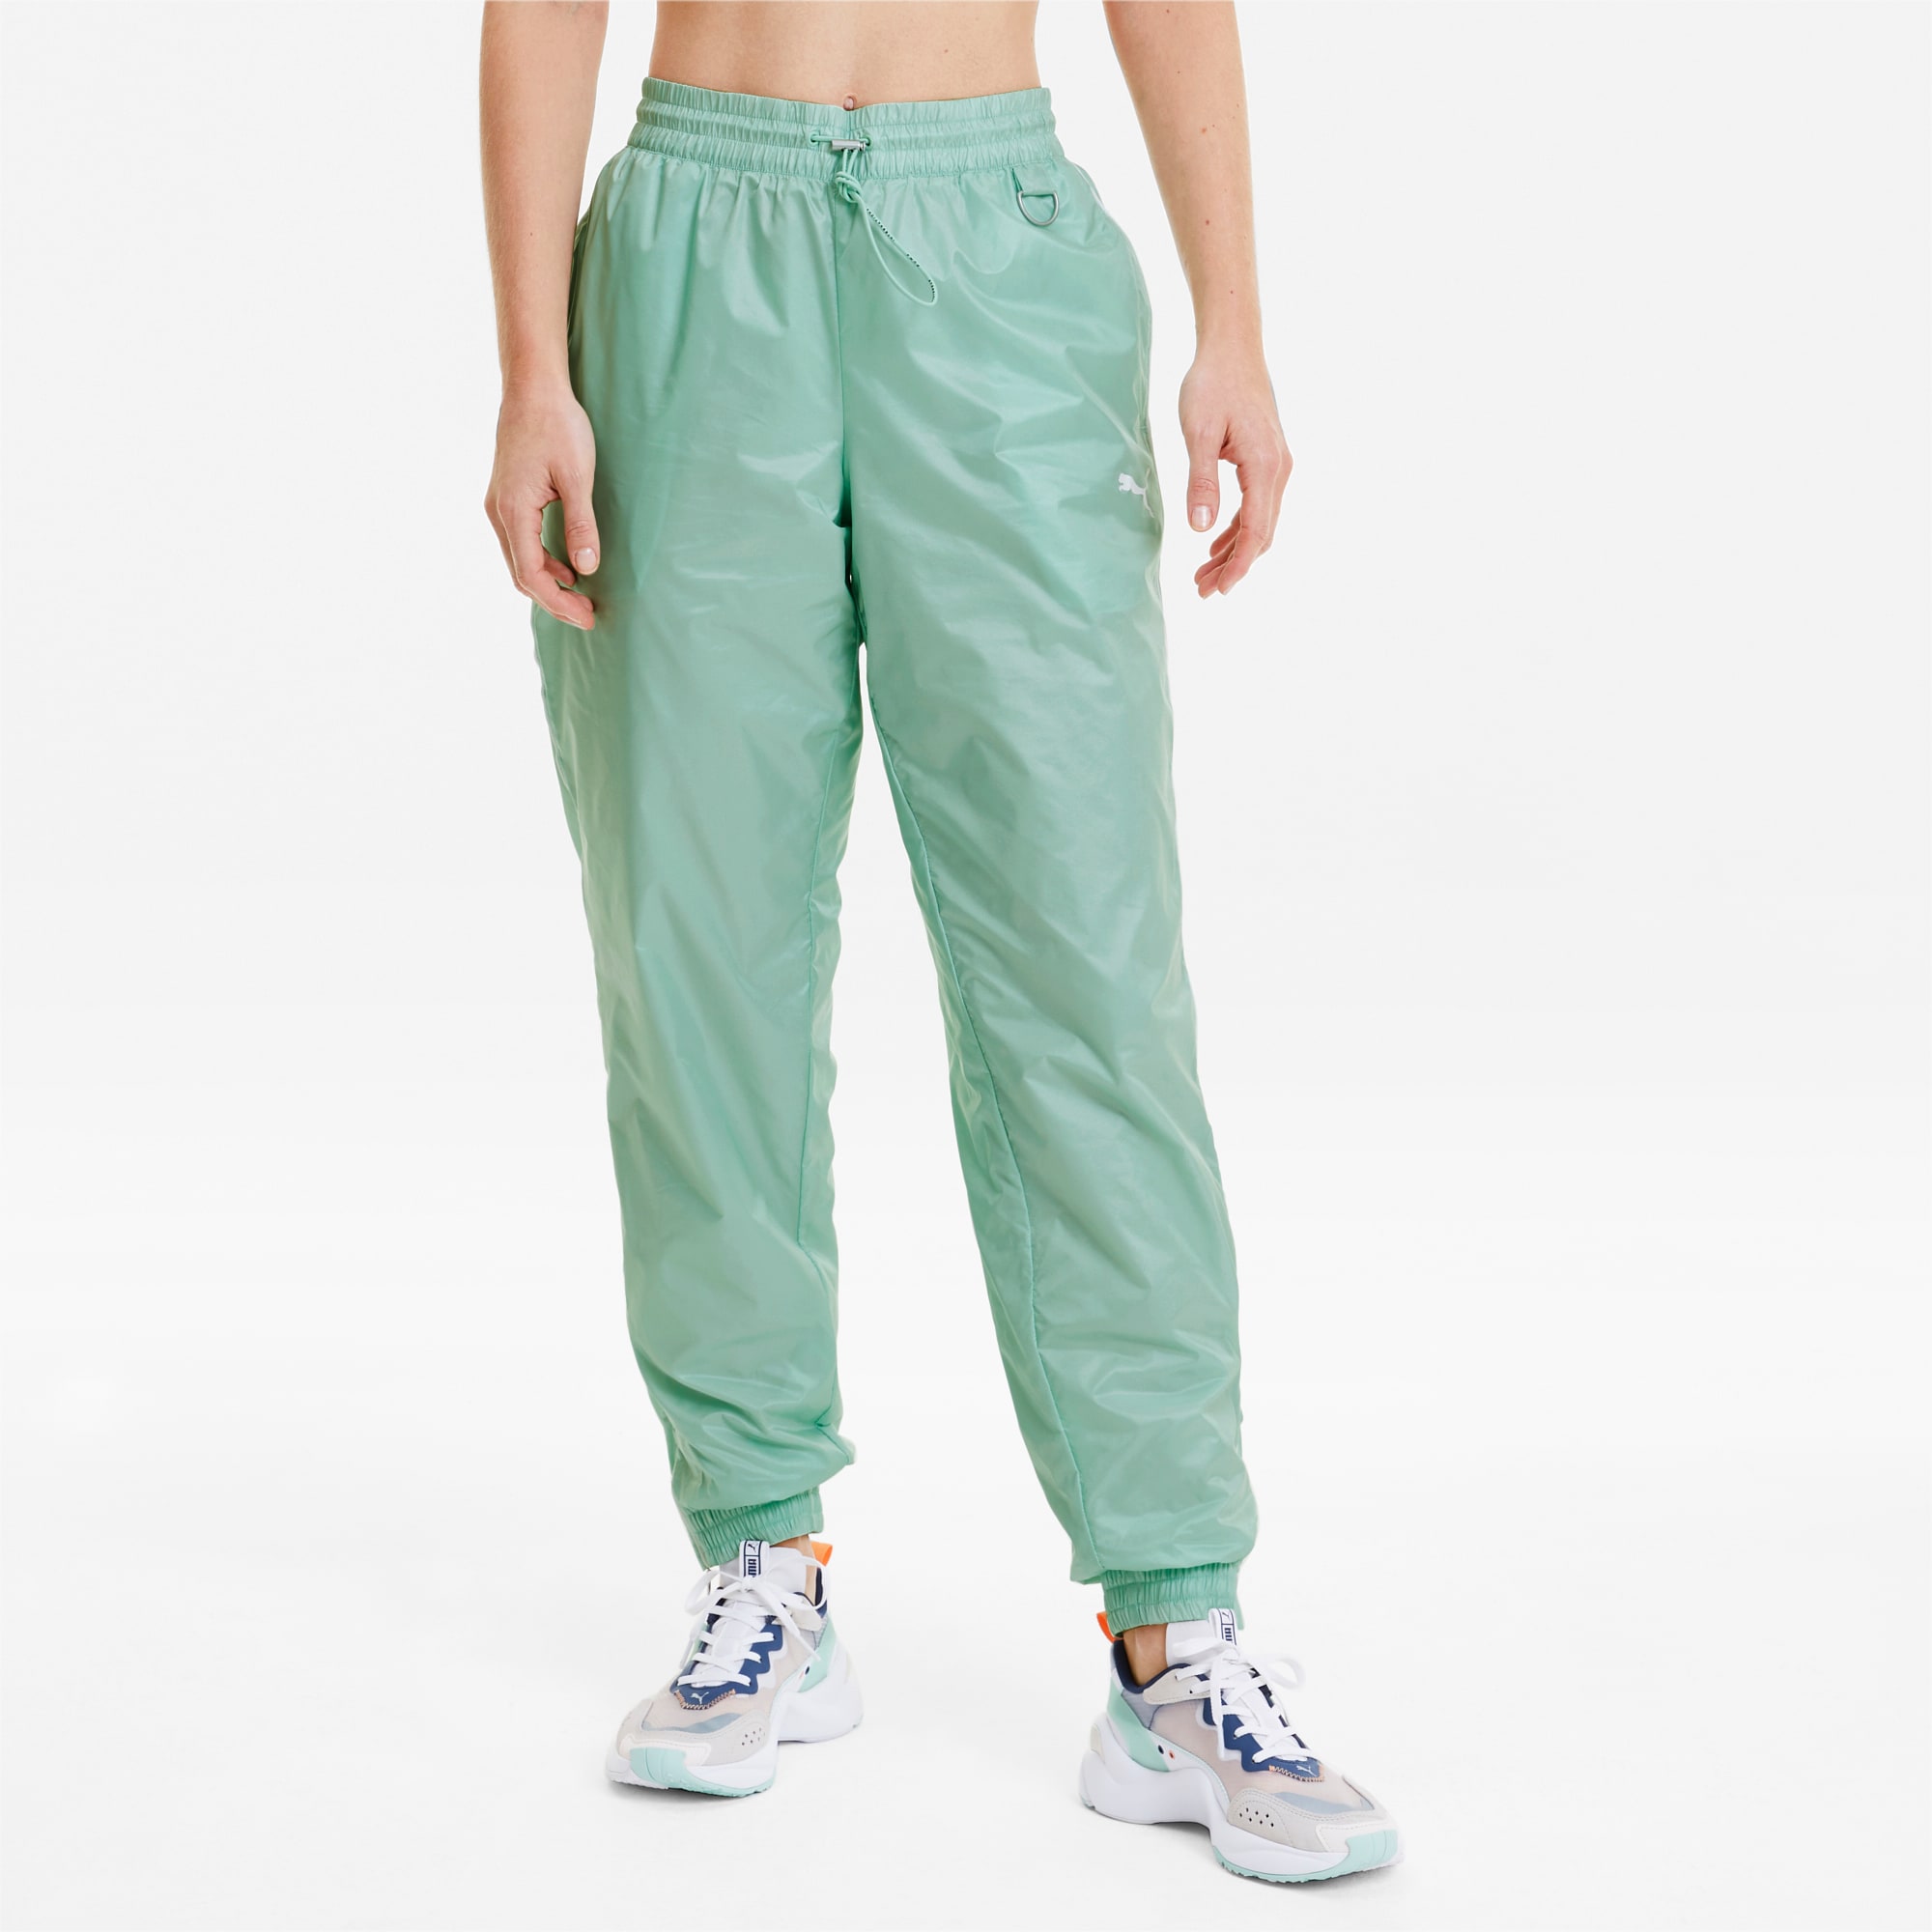 puma track pants green